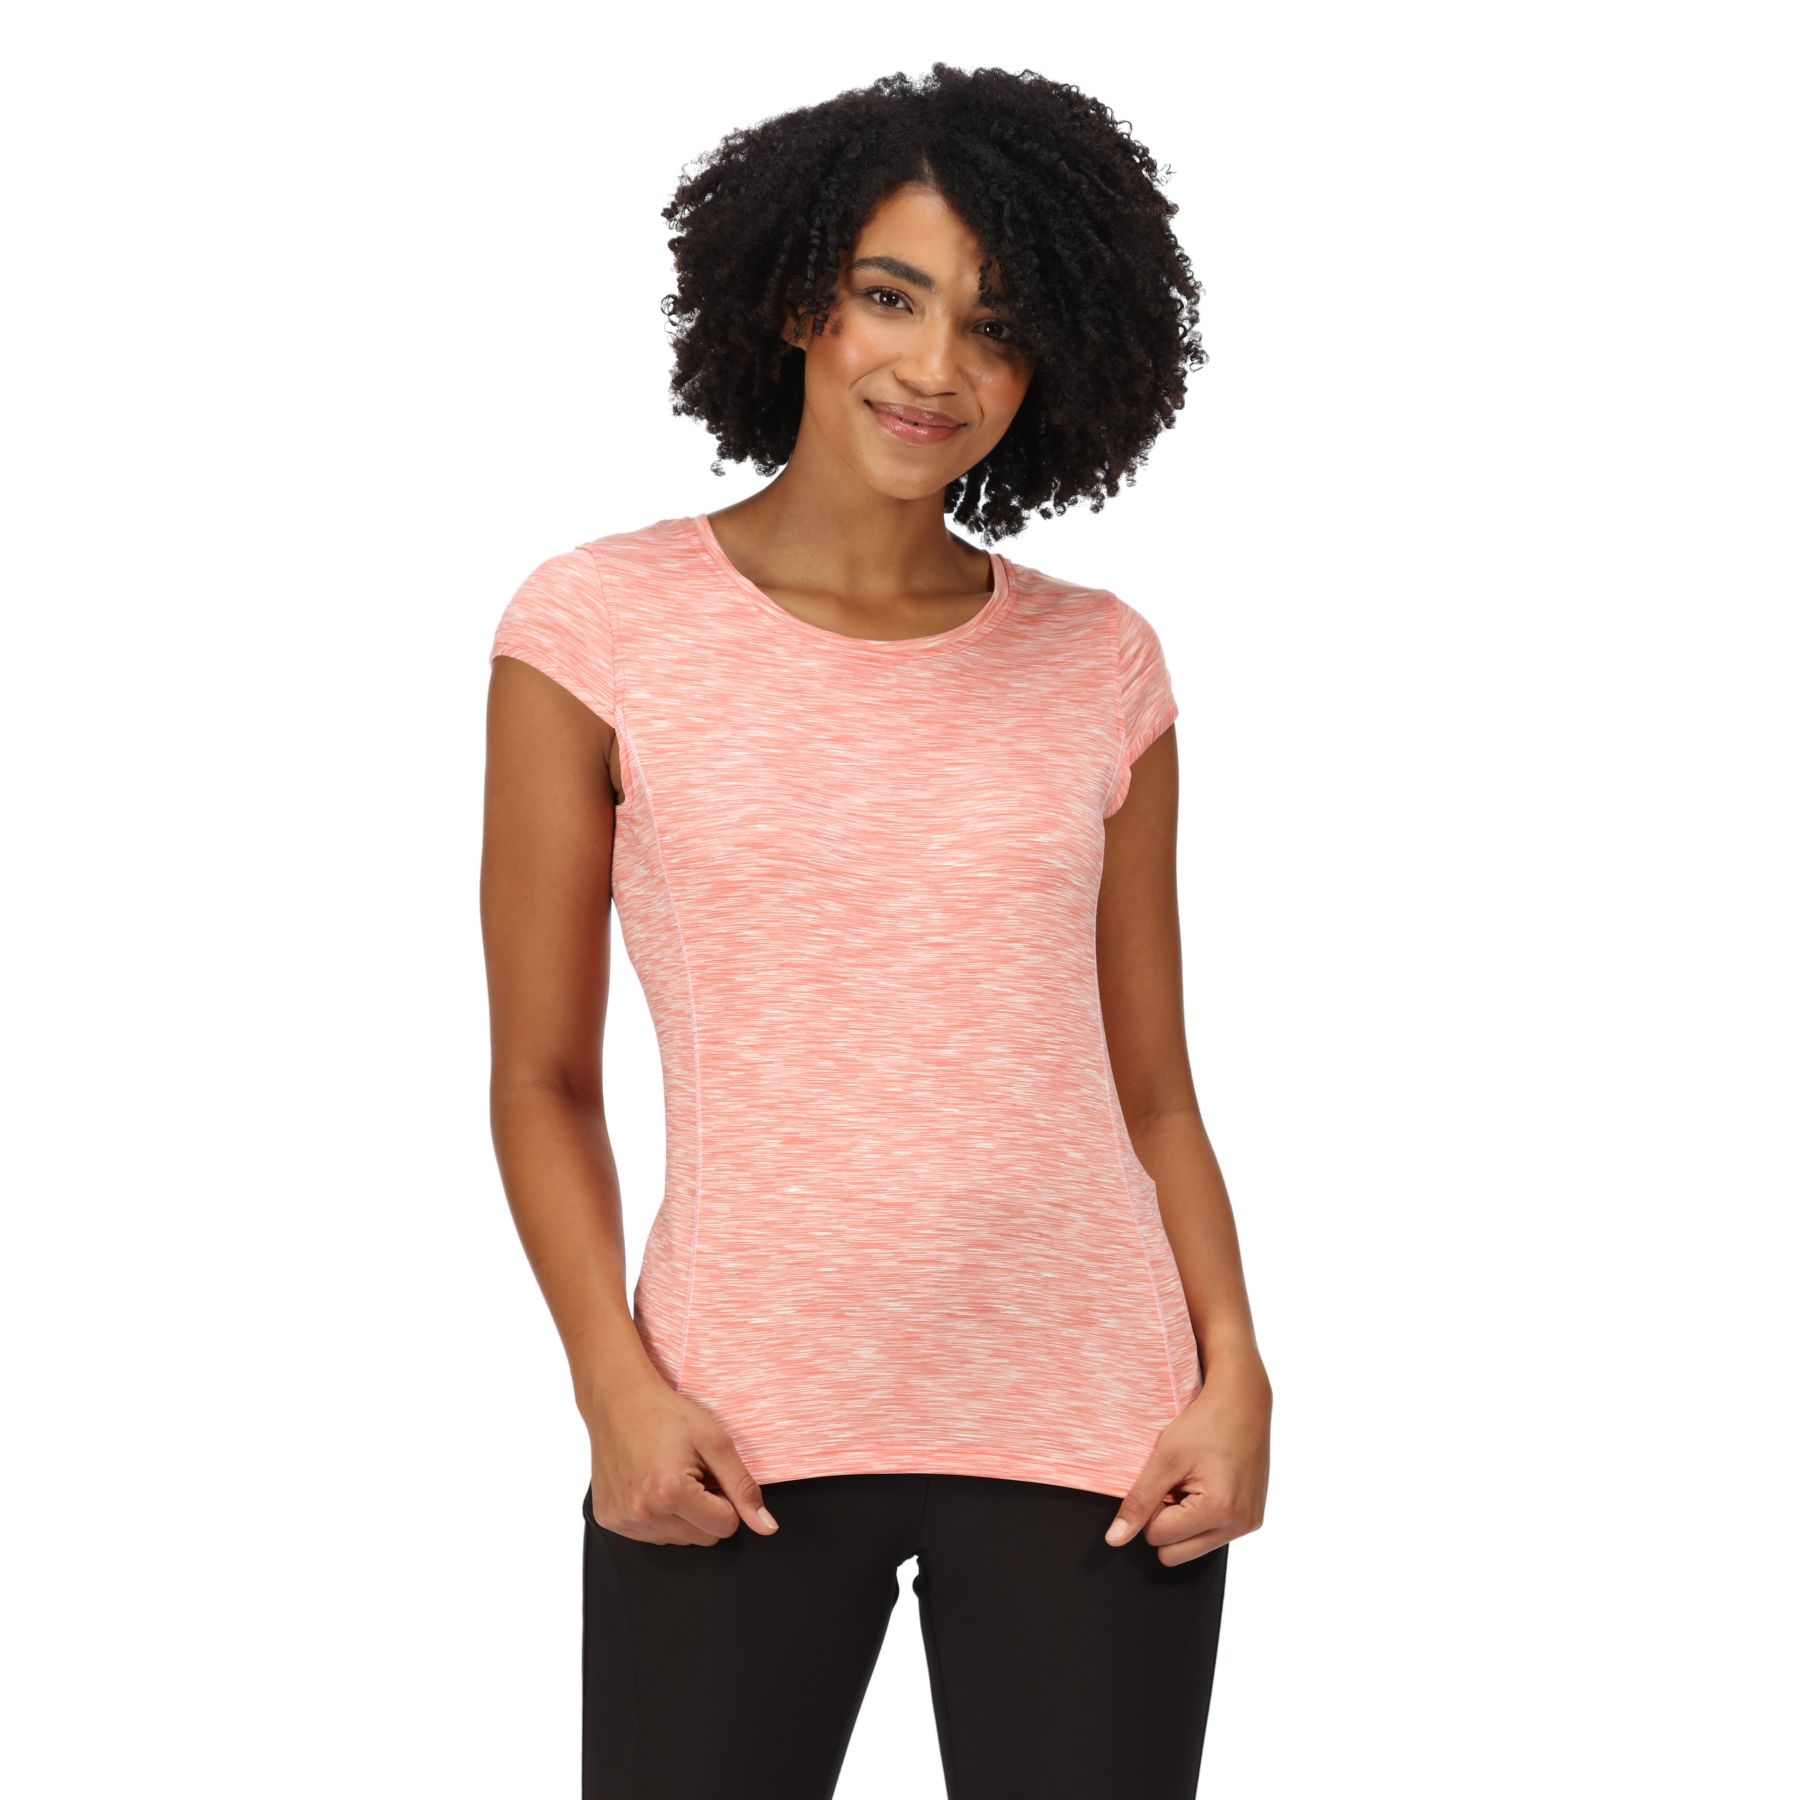 Produktbild von Regatta Hyperdimension II T-Shirt Damen - Fusion Coral A1X